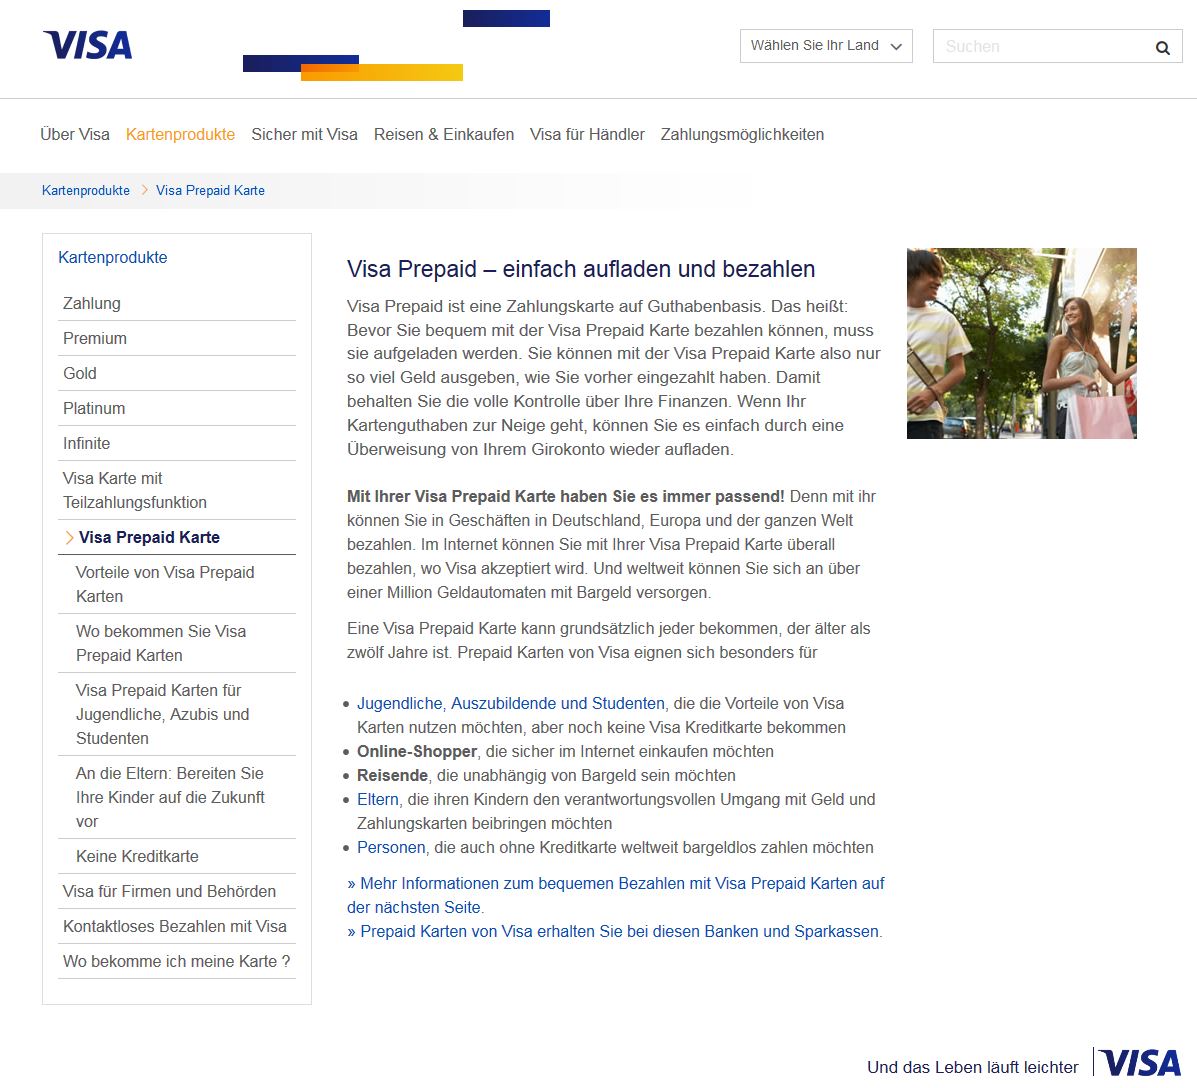 VISA Prepaid - "einfach aufladen und bezahlen" - Infos auf der offiziellen VISA-Website zum Thema Prepaidkarten für Jugendliche, Azubis, Studenten und die Vorteile von von Guthabenkreditkarten (Screenshot www.visa.de/kartenprodukte/visa-prepaid-karte/ am 22.12.2014)